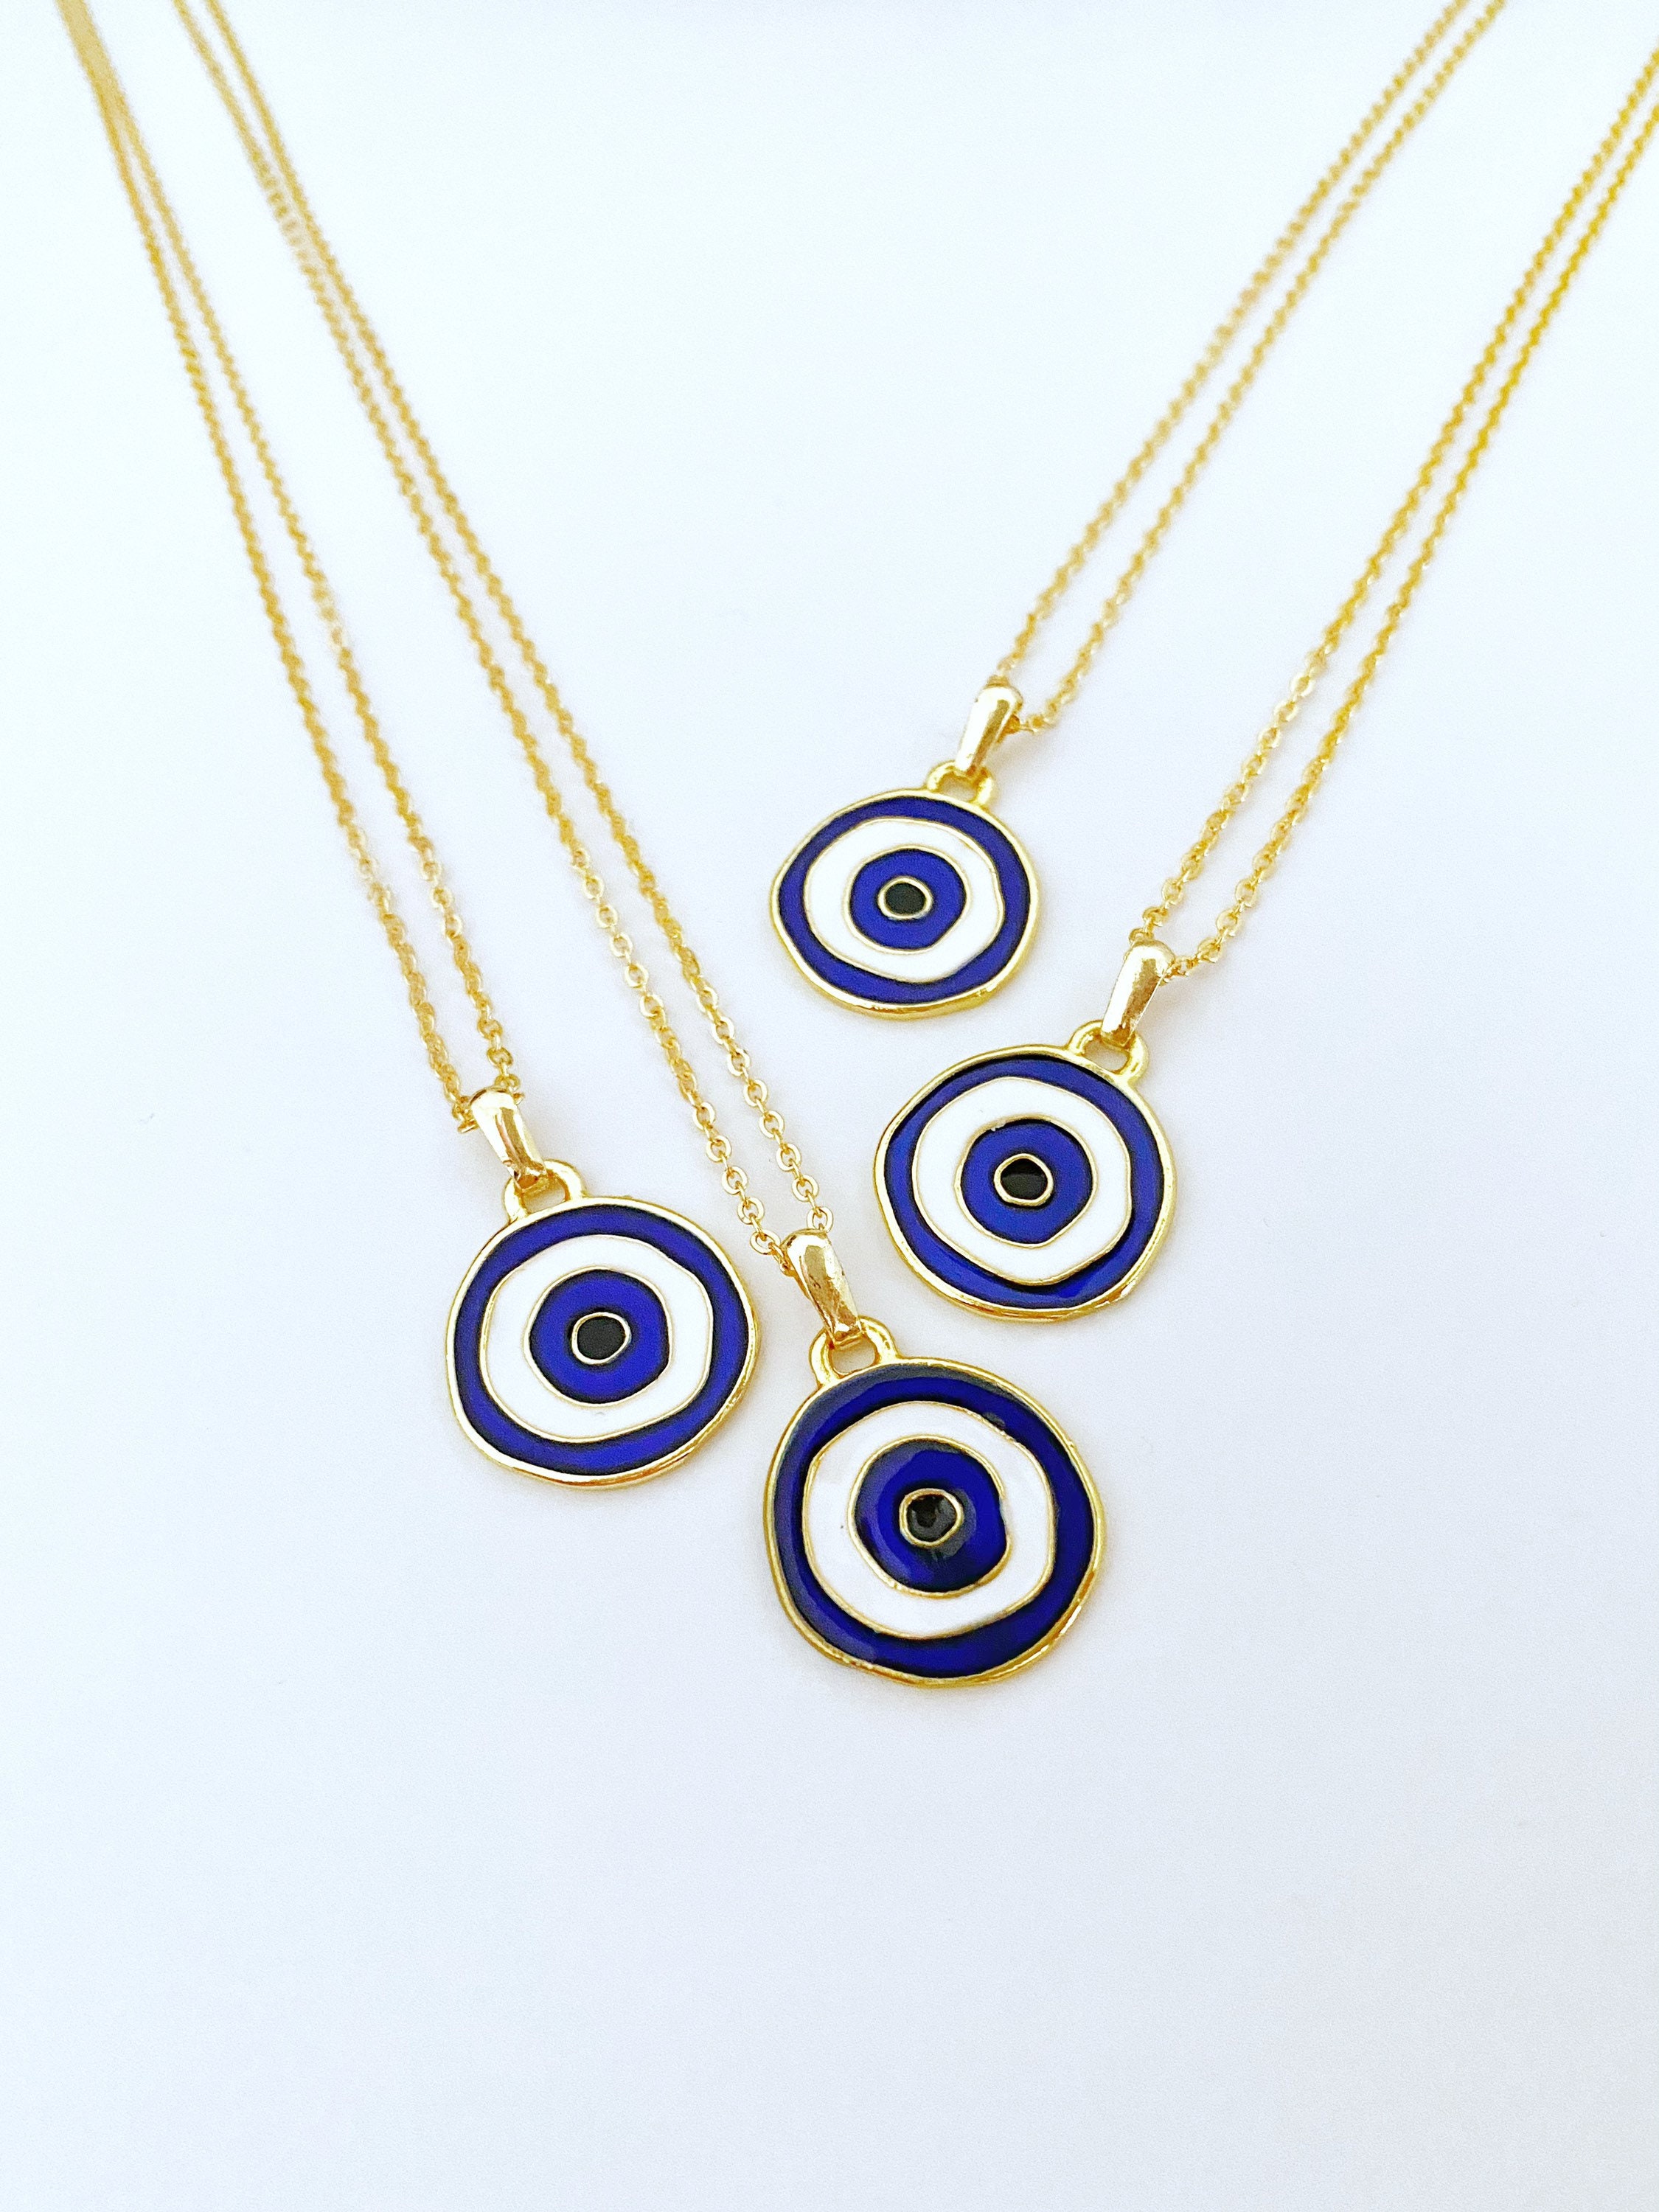 Blue Evil Eye Necklace Lucky Charm Evil Eye Gold Necklace - Etsy